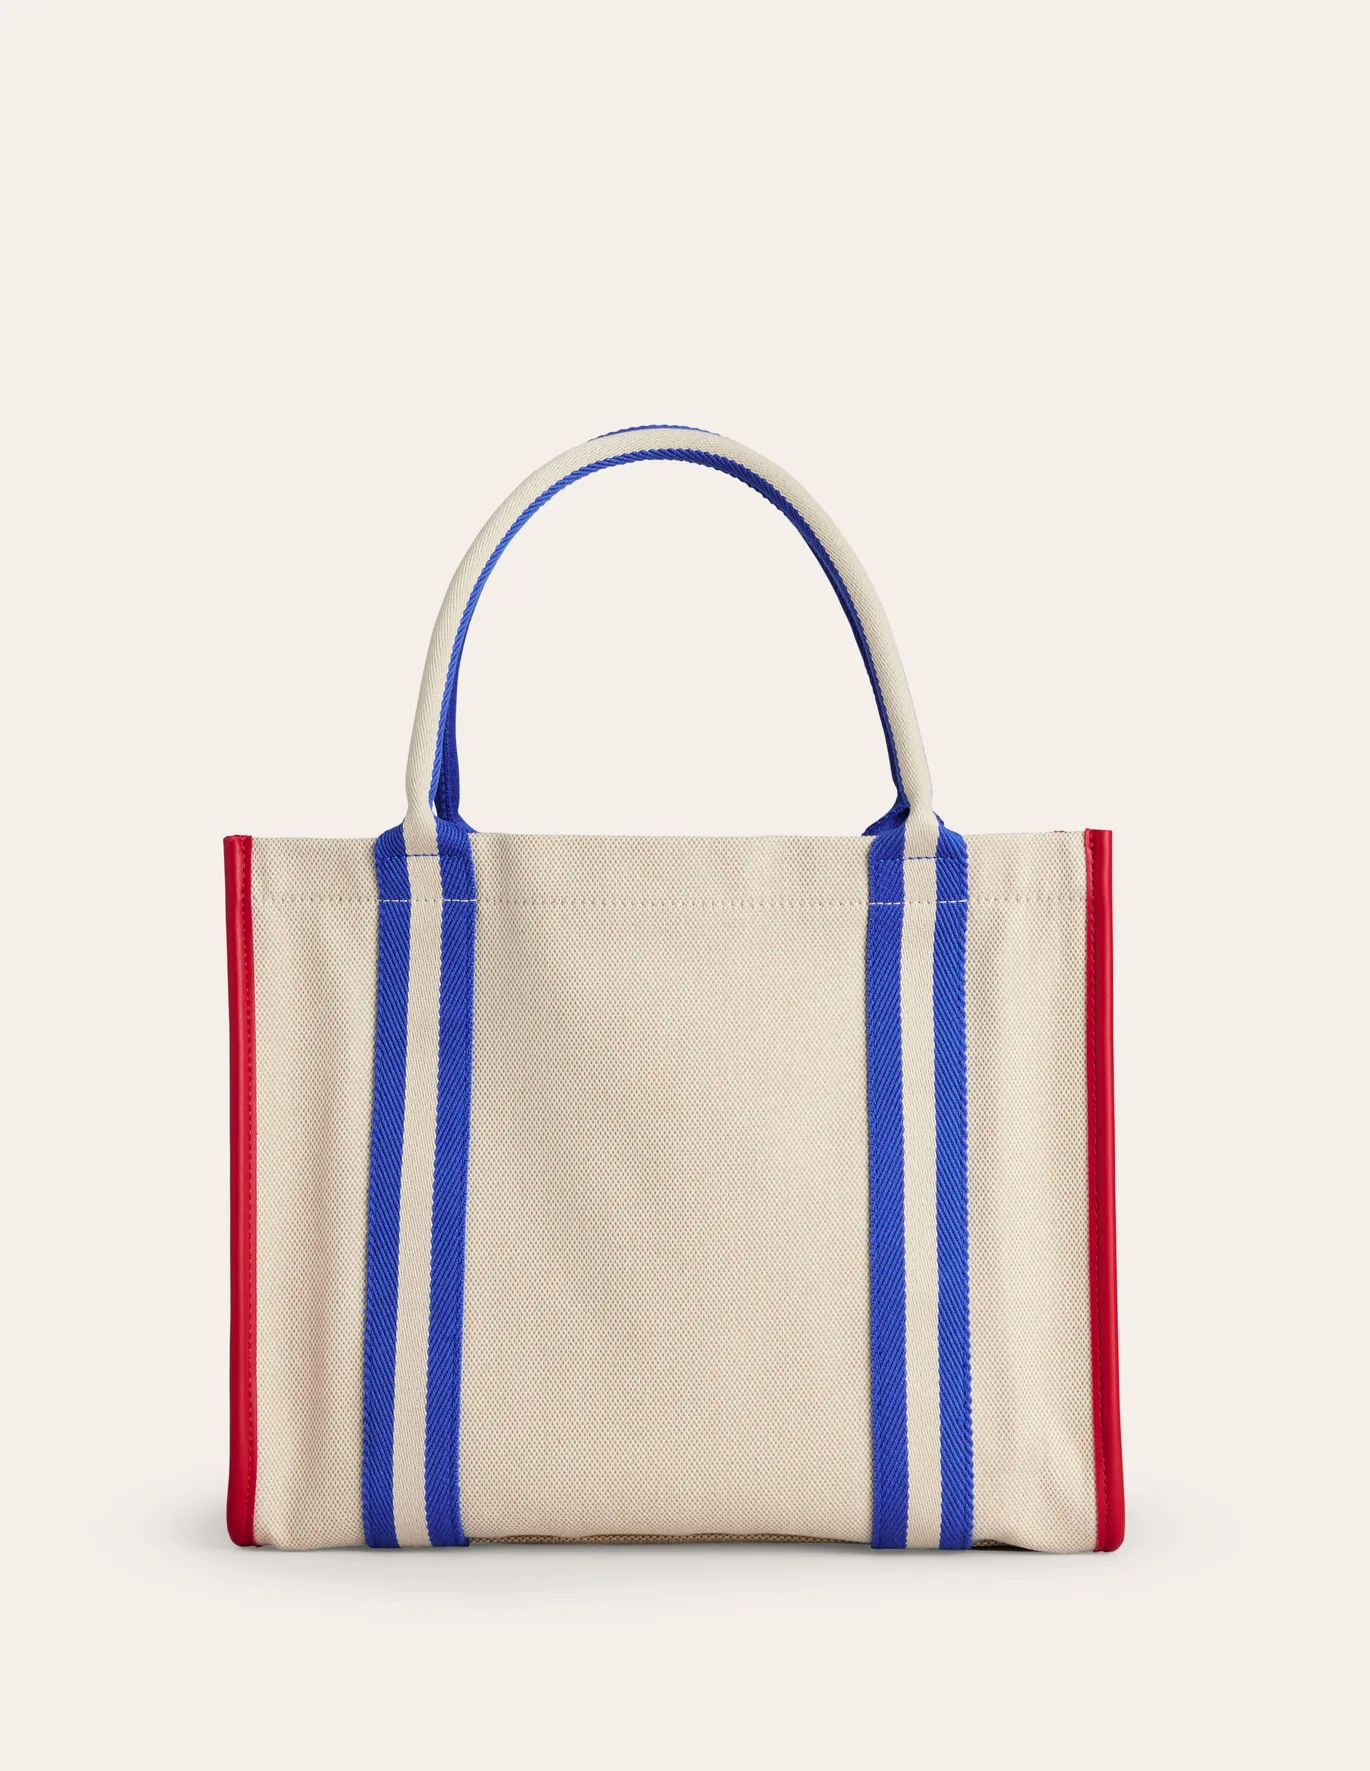 stylish reusable bags